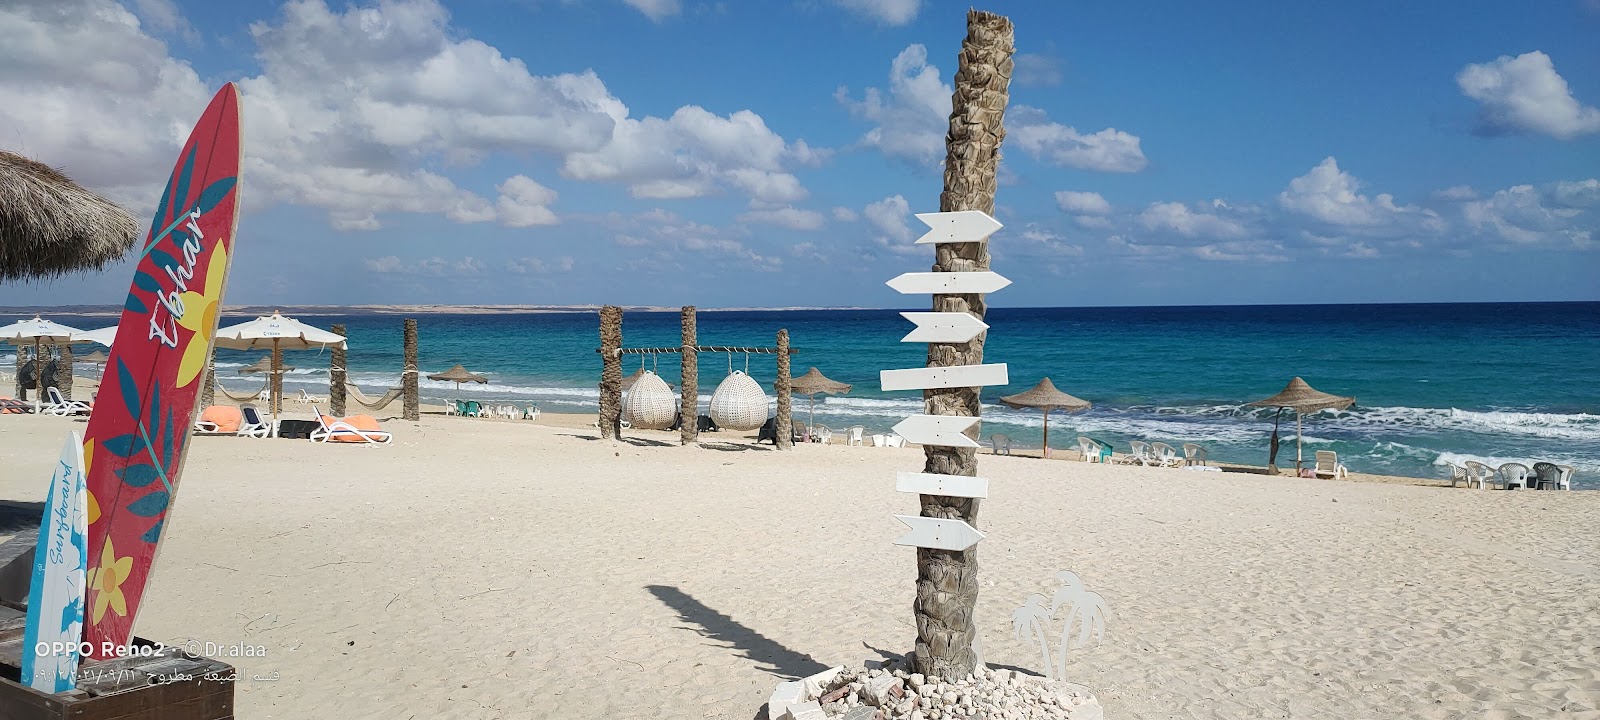 Fotografie cu Al Rawan Resort Beach cu o suprafață de nisip strălucitor